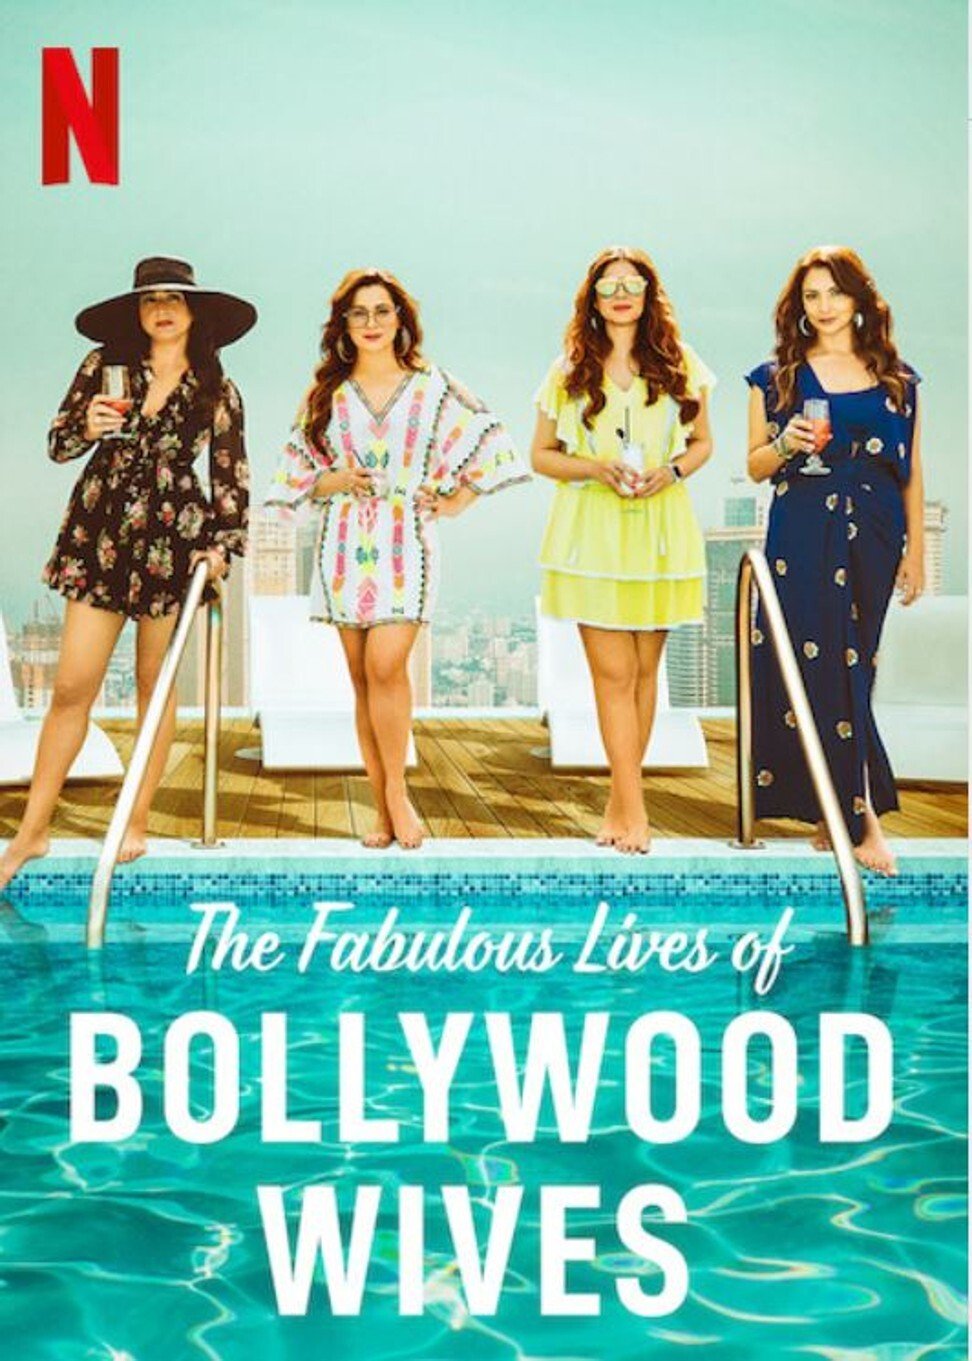 ดูหนังออนไลน์ Fabulous Lives of Bollywood Wives Season 1 Ep05 แฟบูลูส ไลฟ์ ออฟ บอลลีวู๊ด ไวส์ท ปี1 ตอนที่5